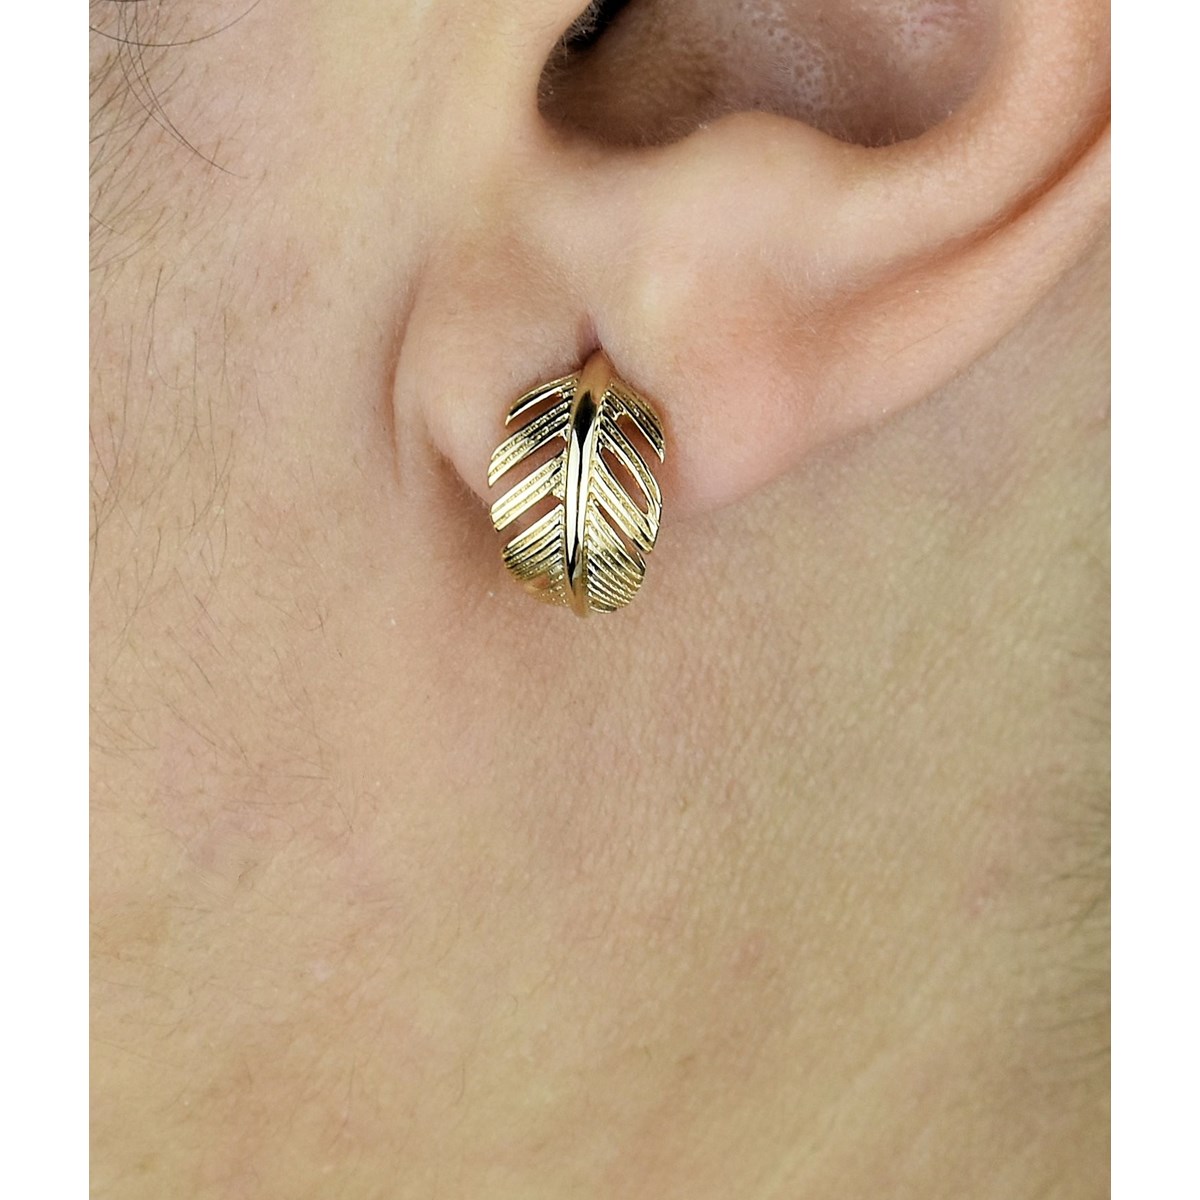 Boucles d'oreilles Créoles feuille courbée Plaqué OR 750 3 microns - vue 3